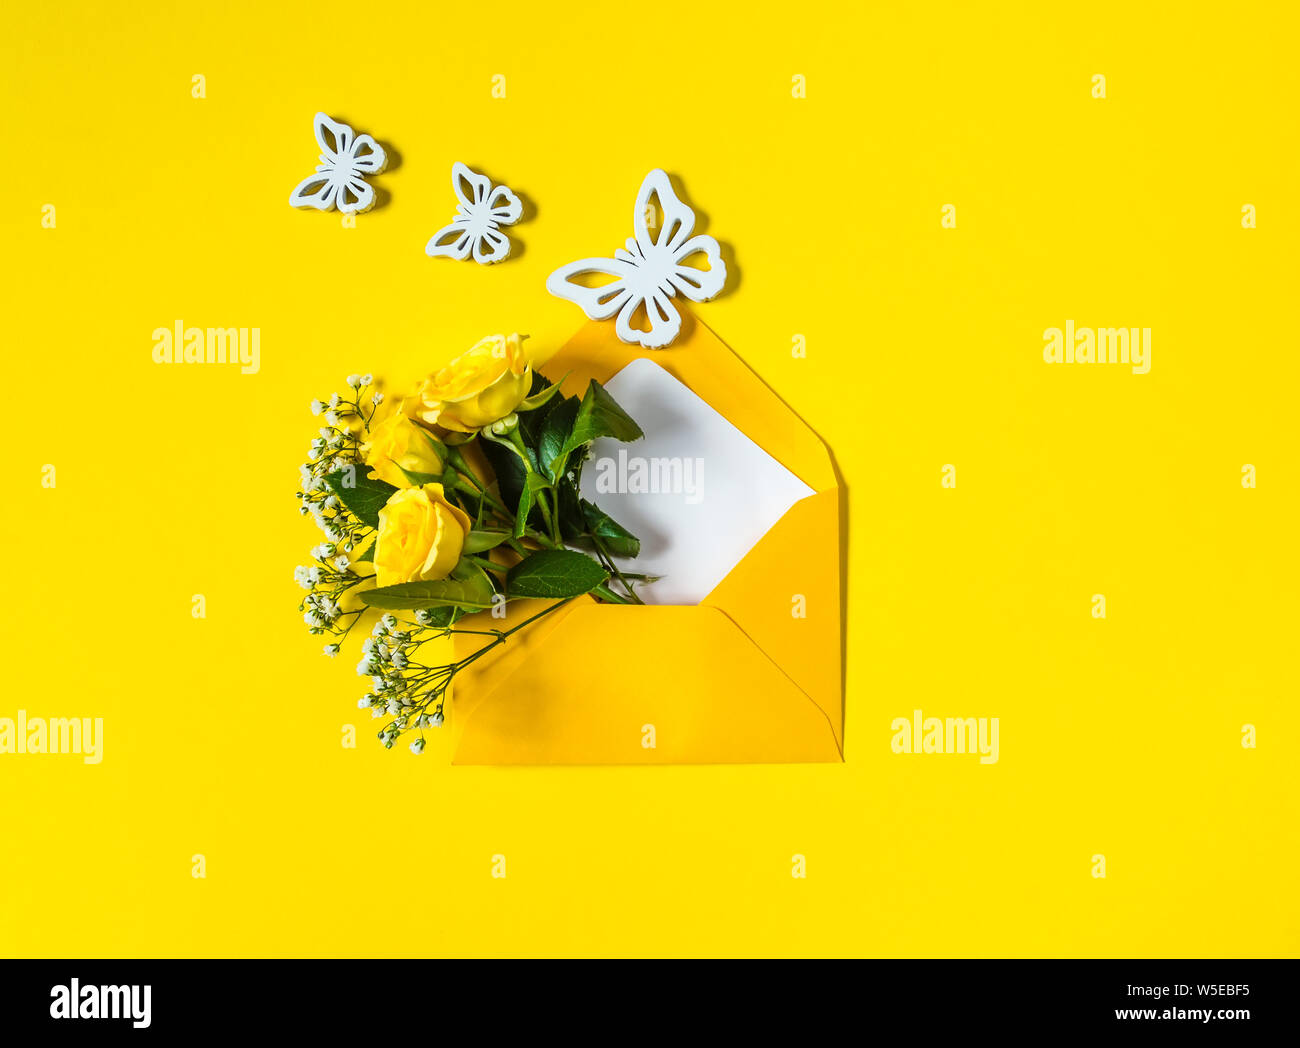 Gelbe Rosen und weißen Gypsophila in Umschlag und drei Holz- Schmetterlinge close-up auf gelben Hintergrund. Ansicht von oben, flach. Vorlage für eine Begrüßung Stockfoto